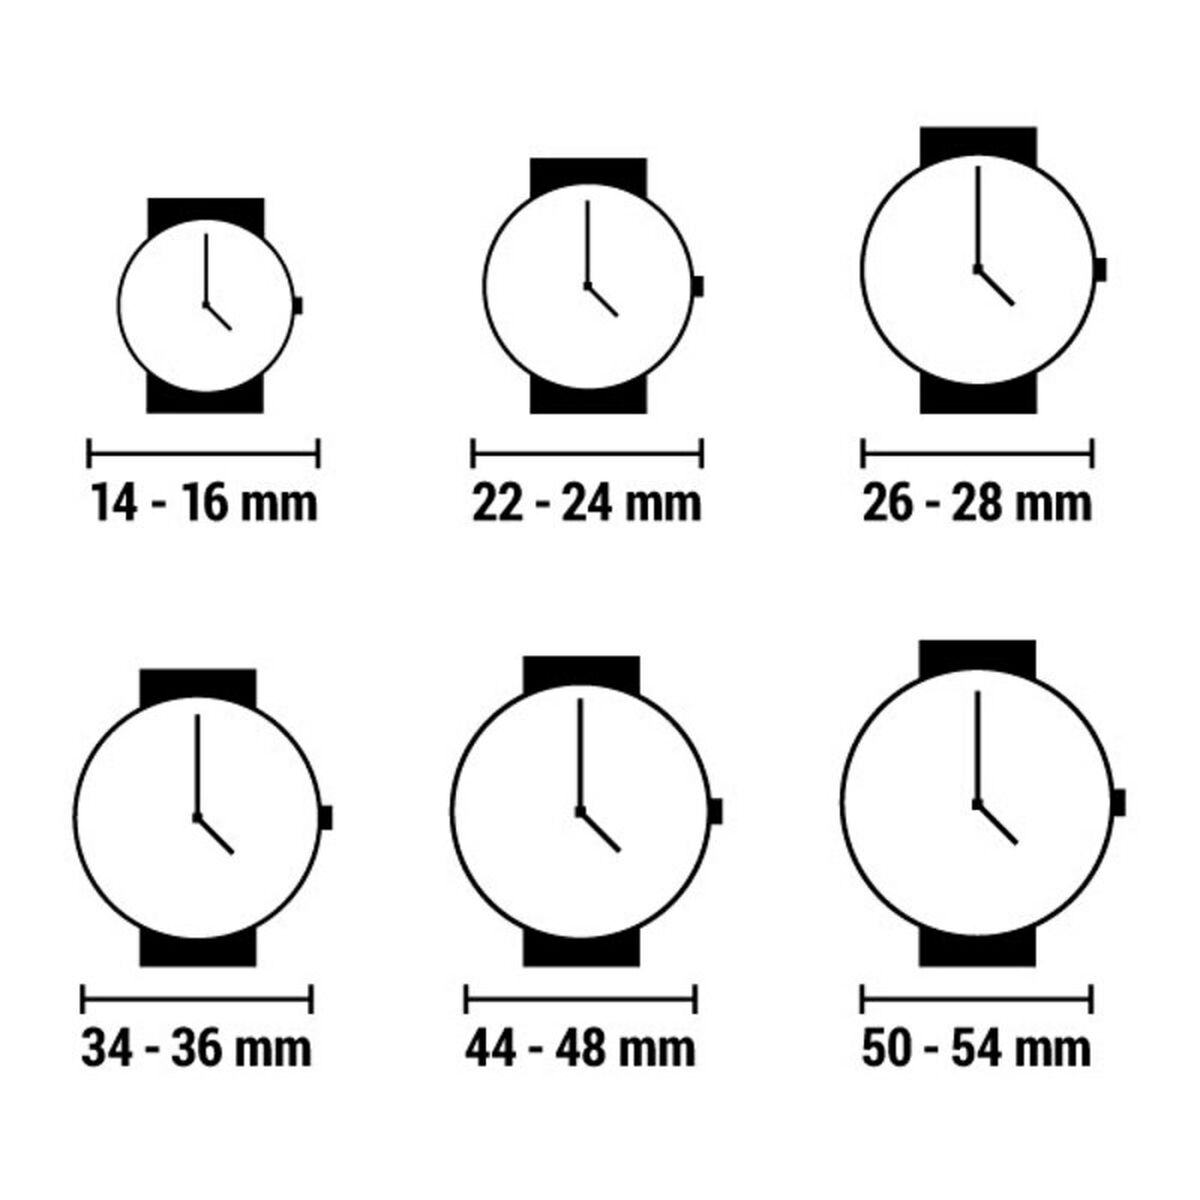 Horloge Heren Laura Biagiotti LB0031M-01 (Ø 47 mm)